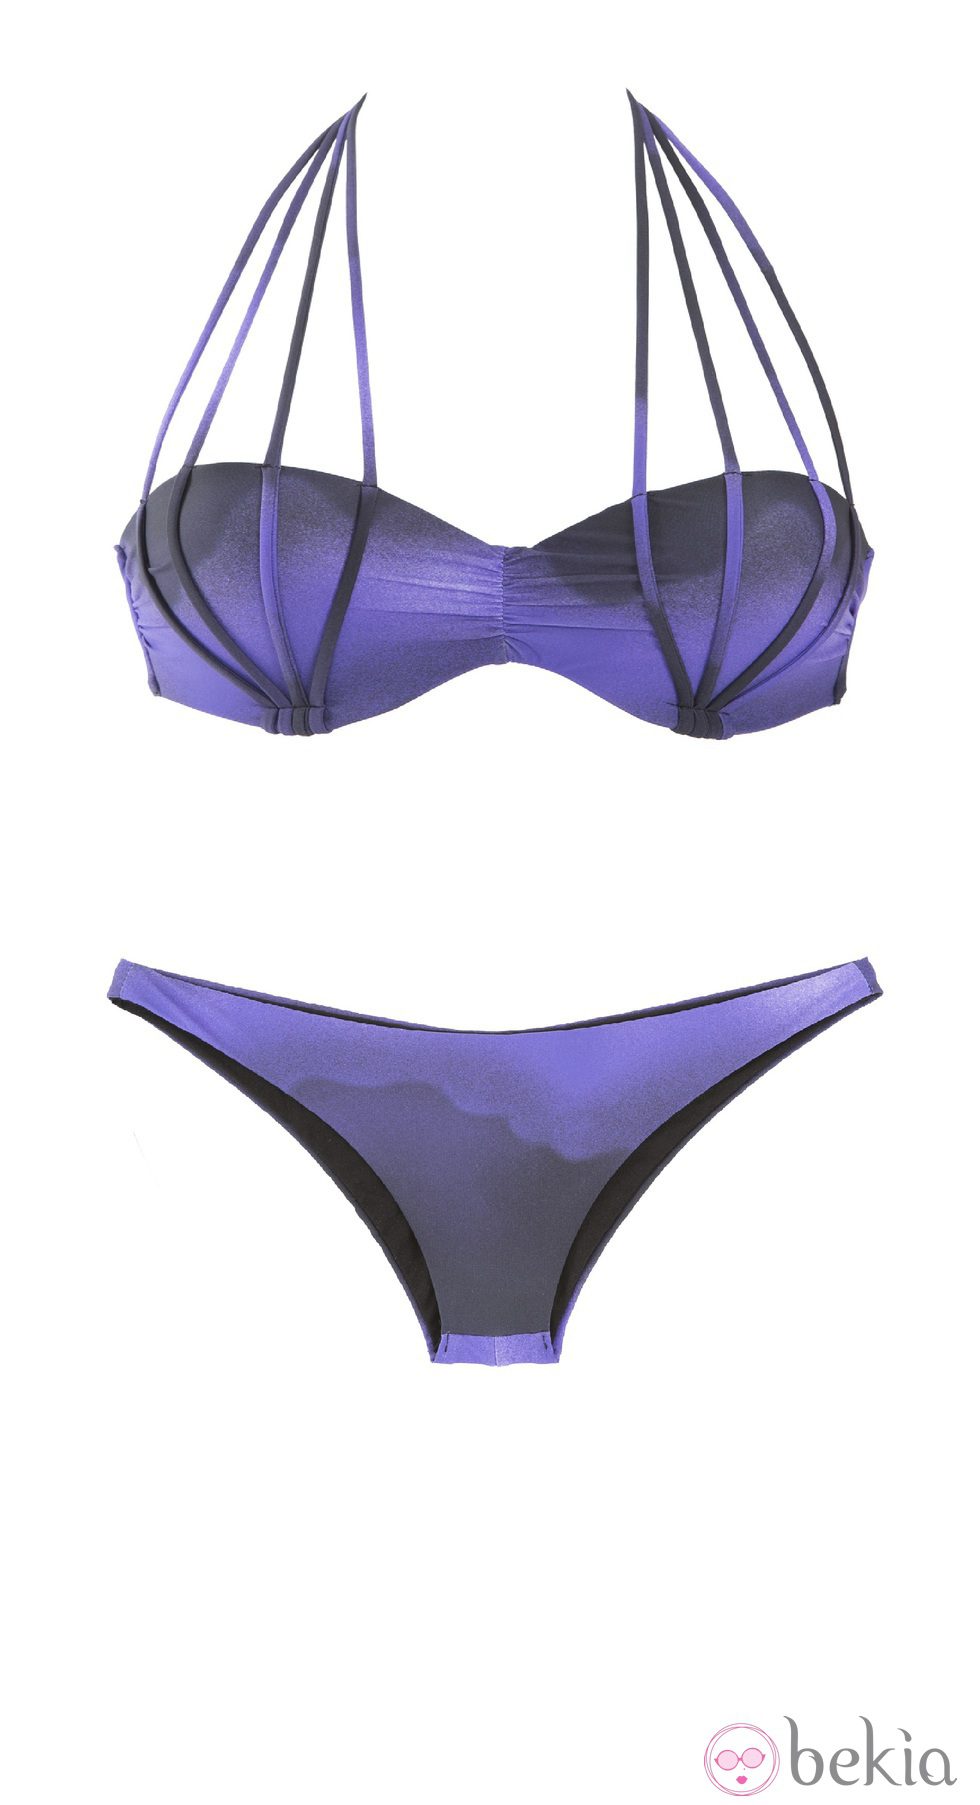 Bikini bandeau con tiras y efecto degradé en morado de OniricSwimwear para verano 2014